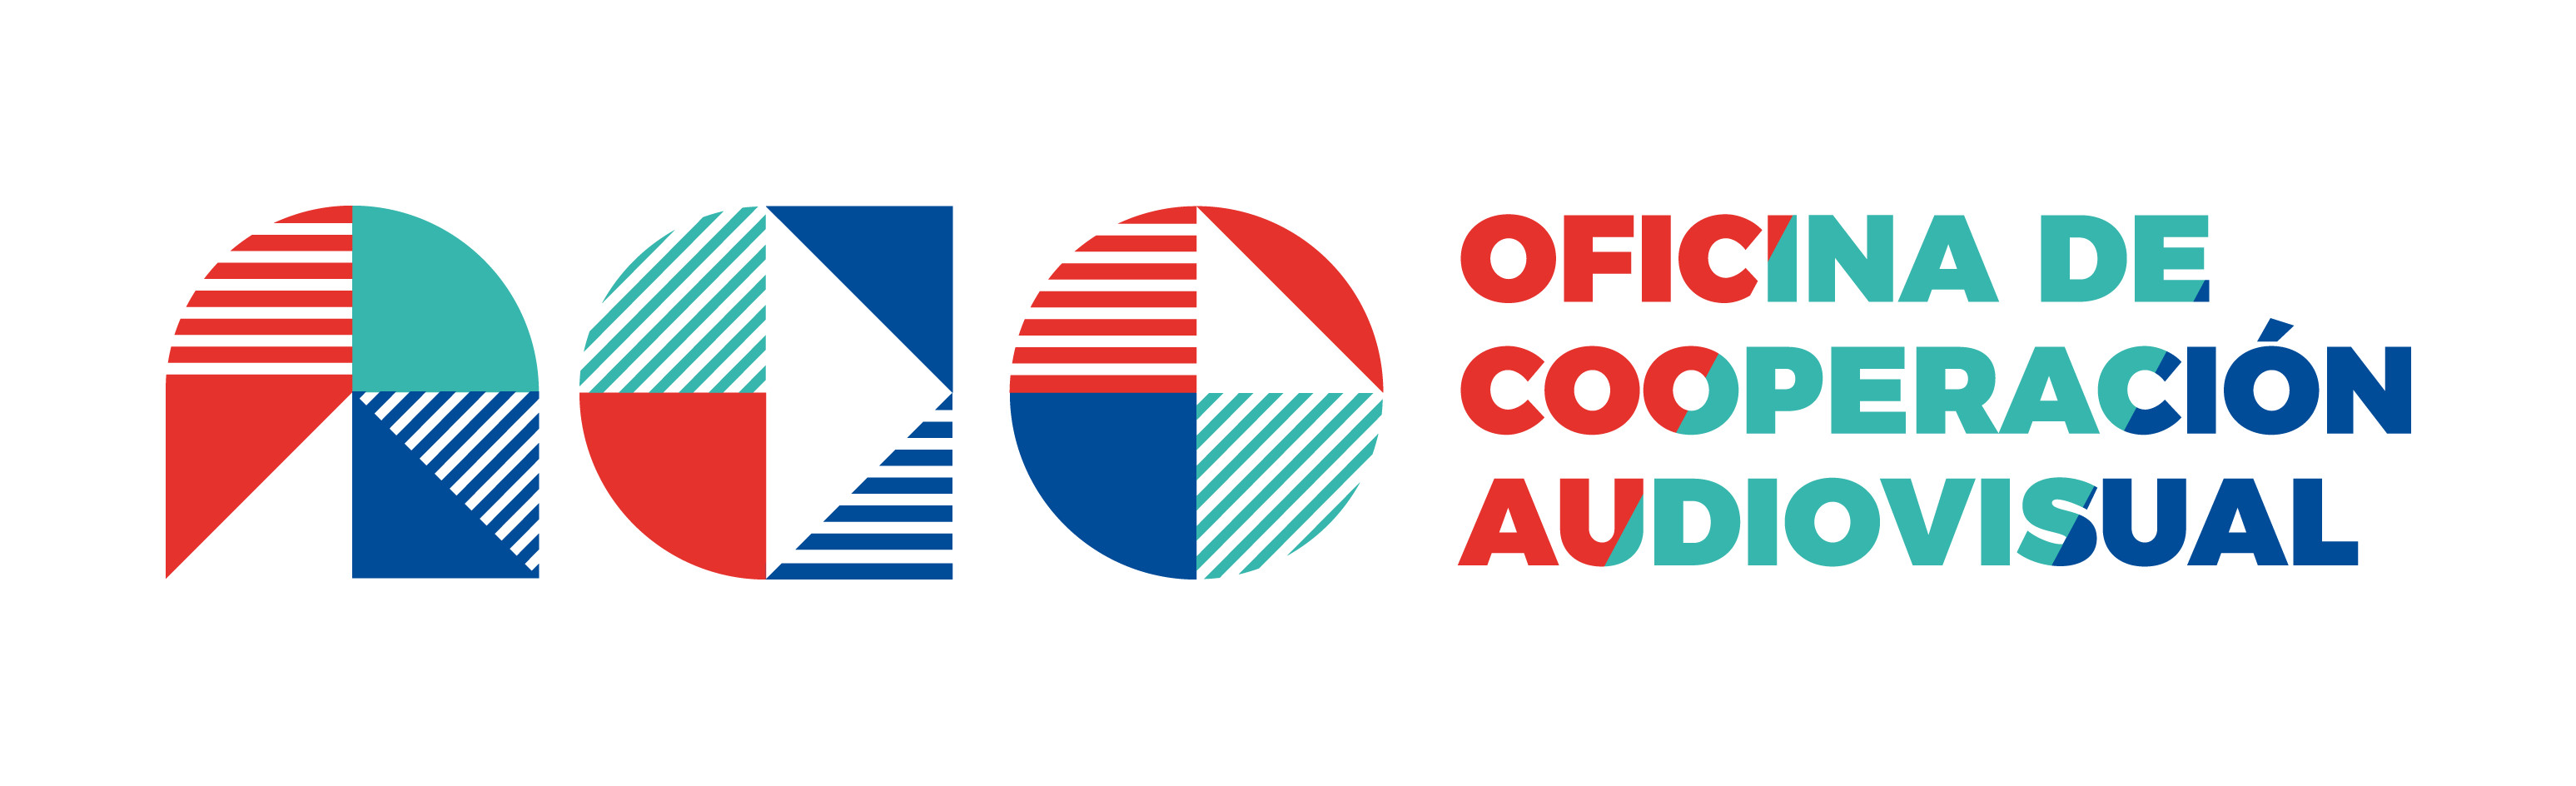 Oficina de Cooperación Audiovisual (ACO)